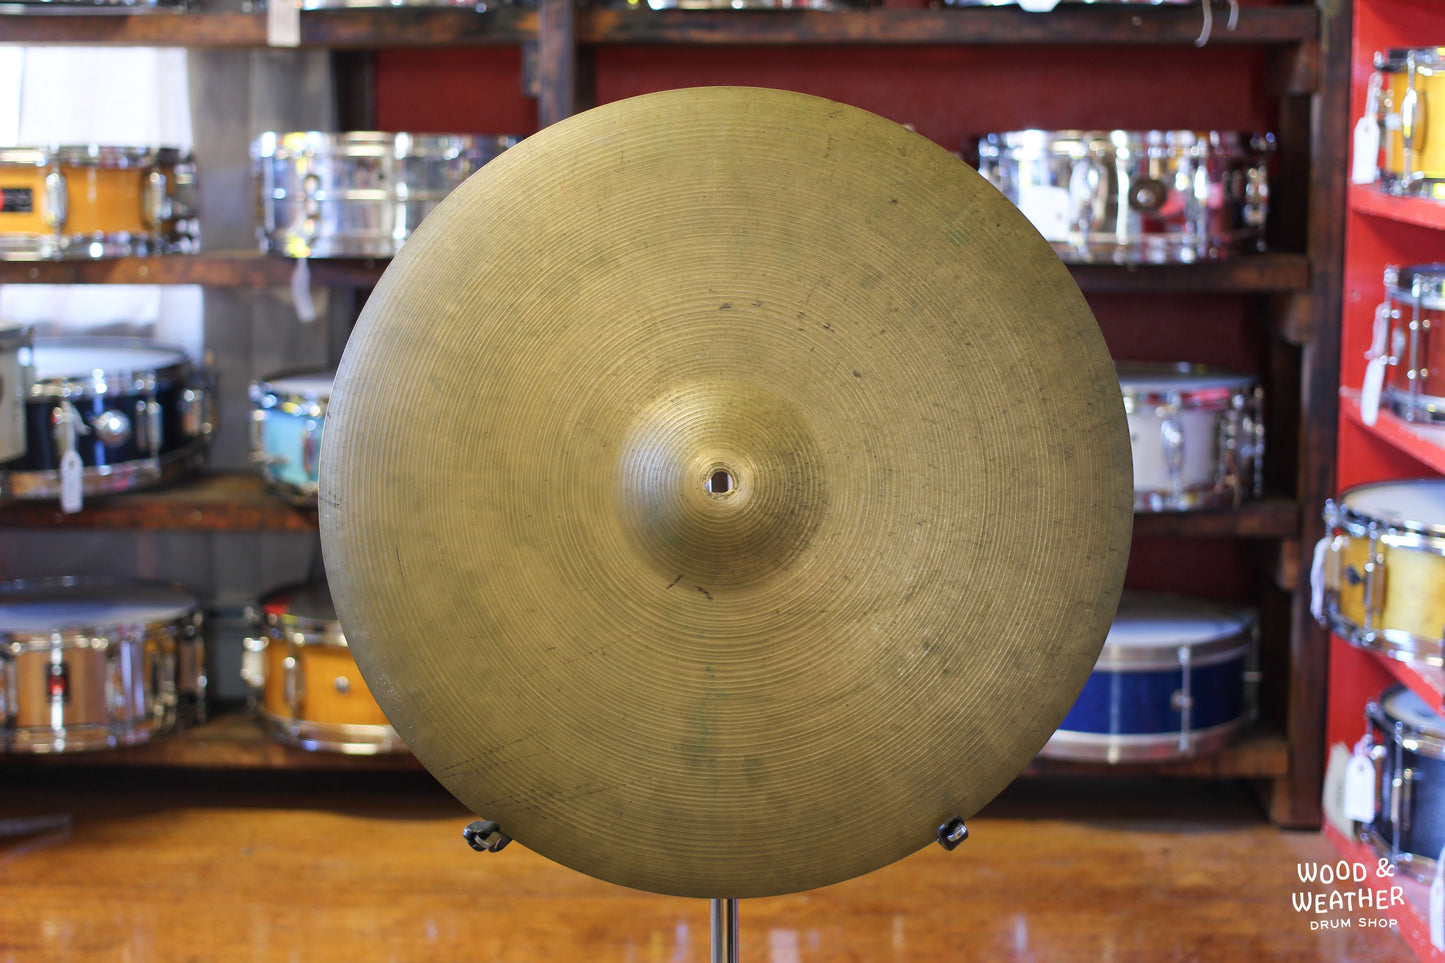 1960s A. Zildjian 20" Ride Cymbal 1925g